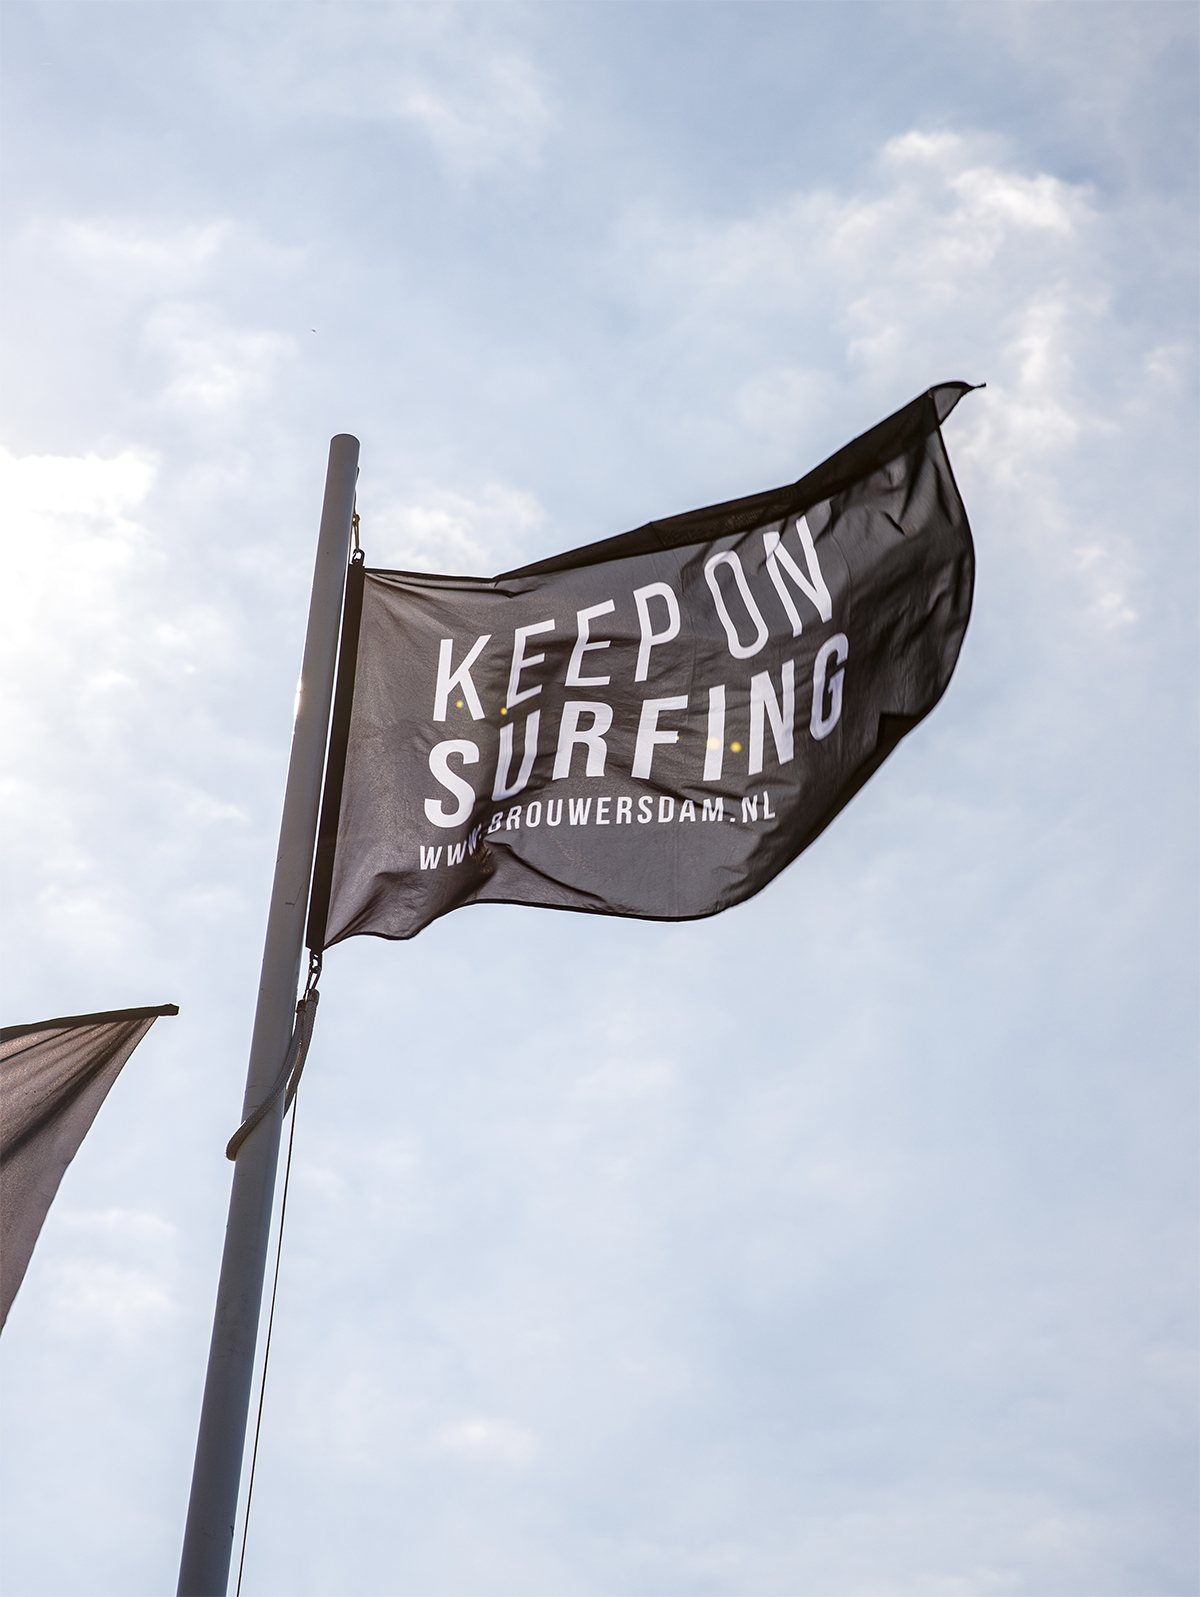 Keep On Surfing Flag